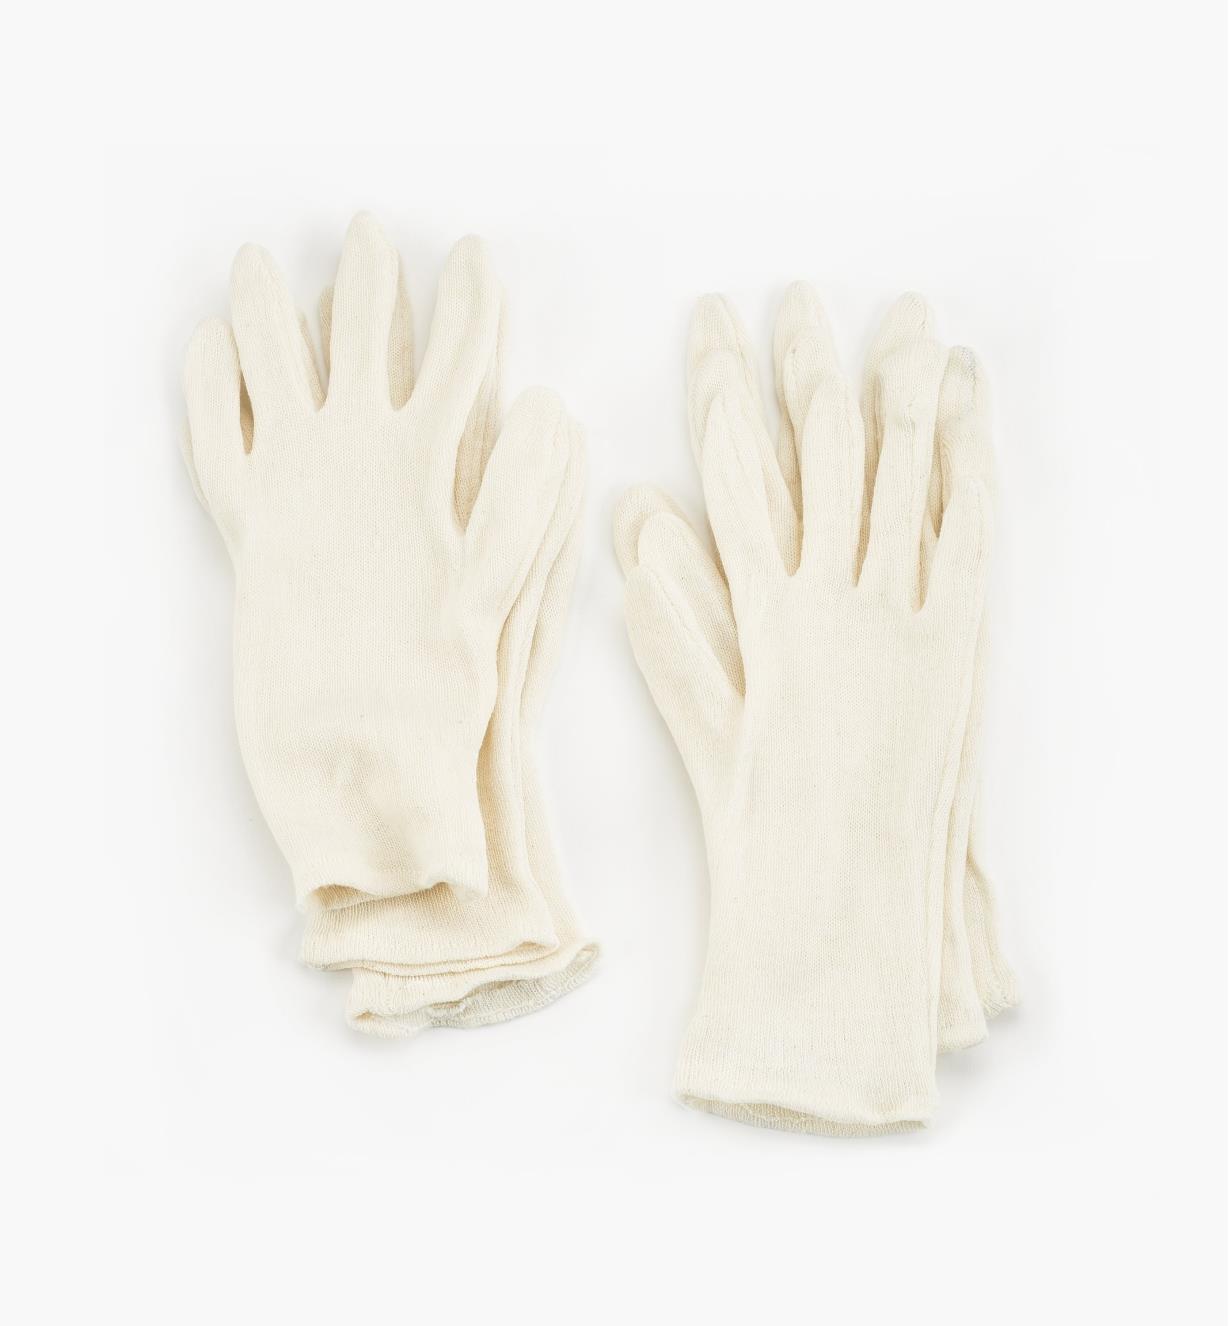 67K9102 - Sous-gants en coton pour homme, 3 paires